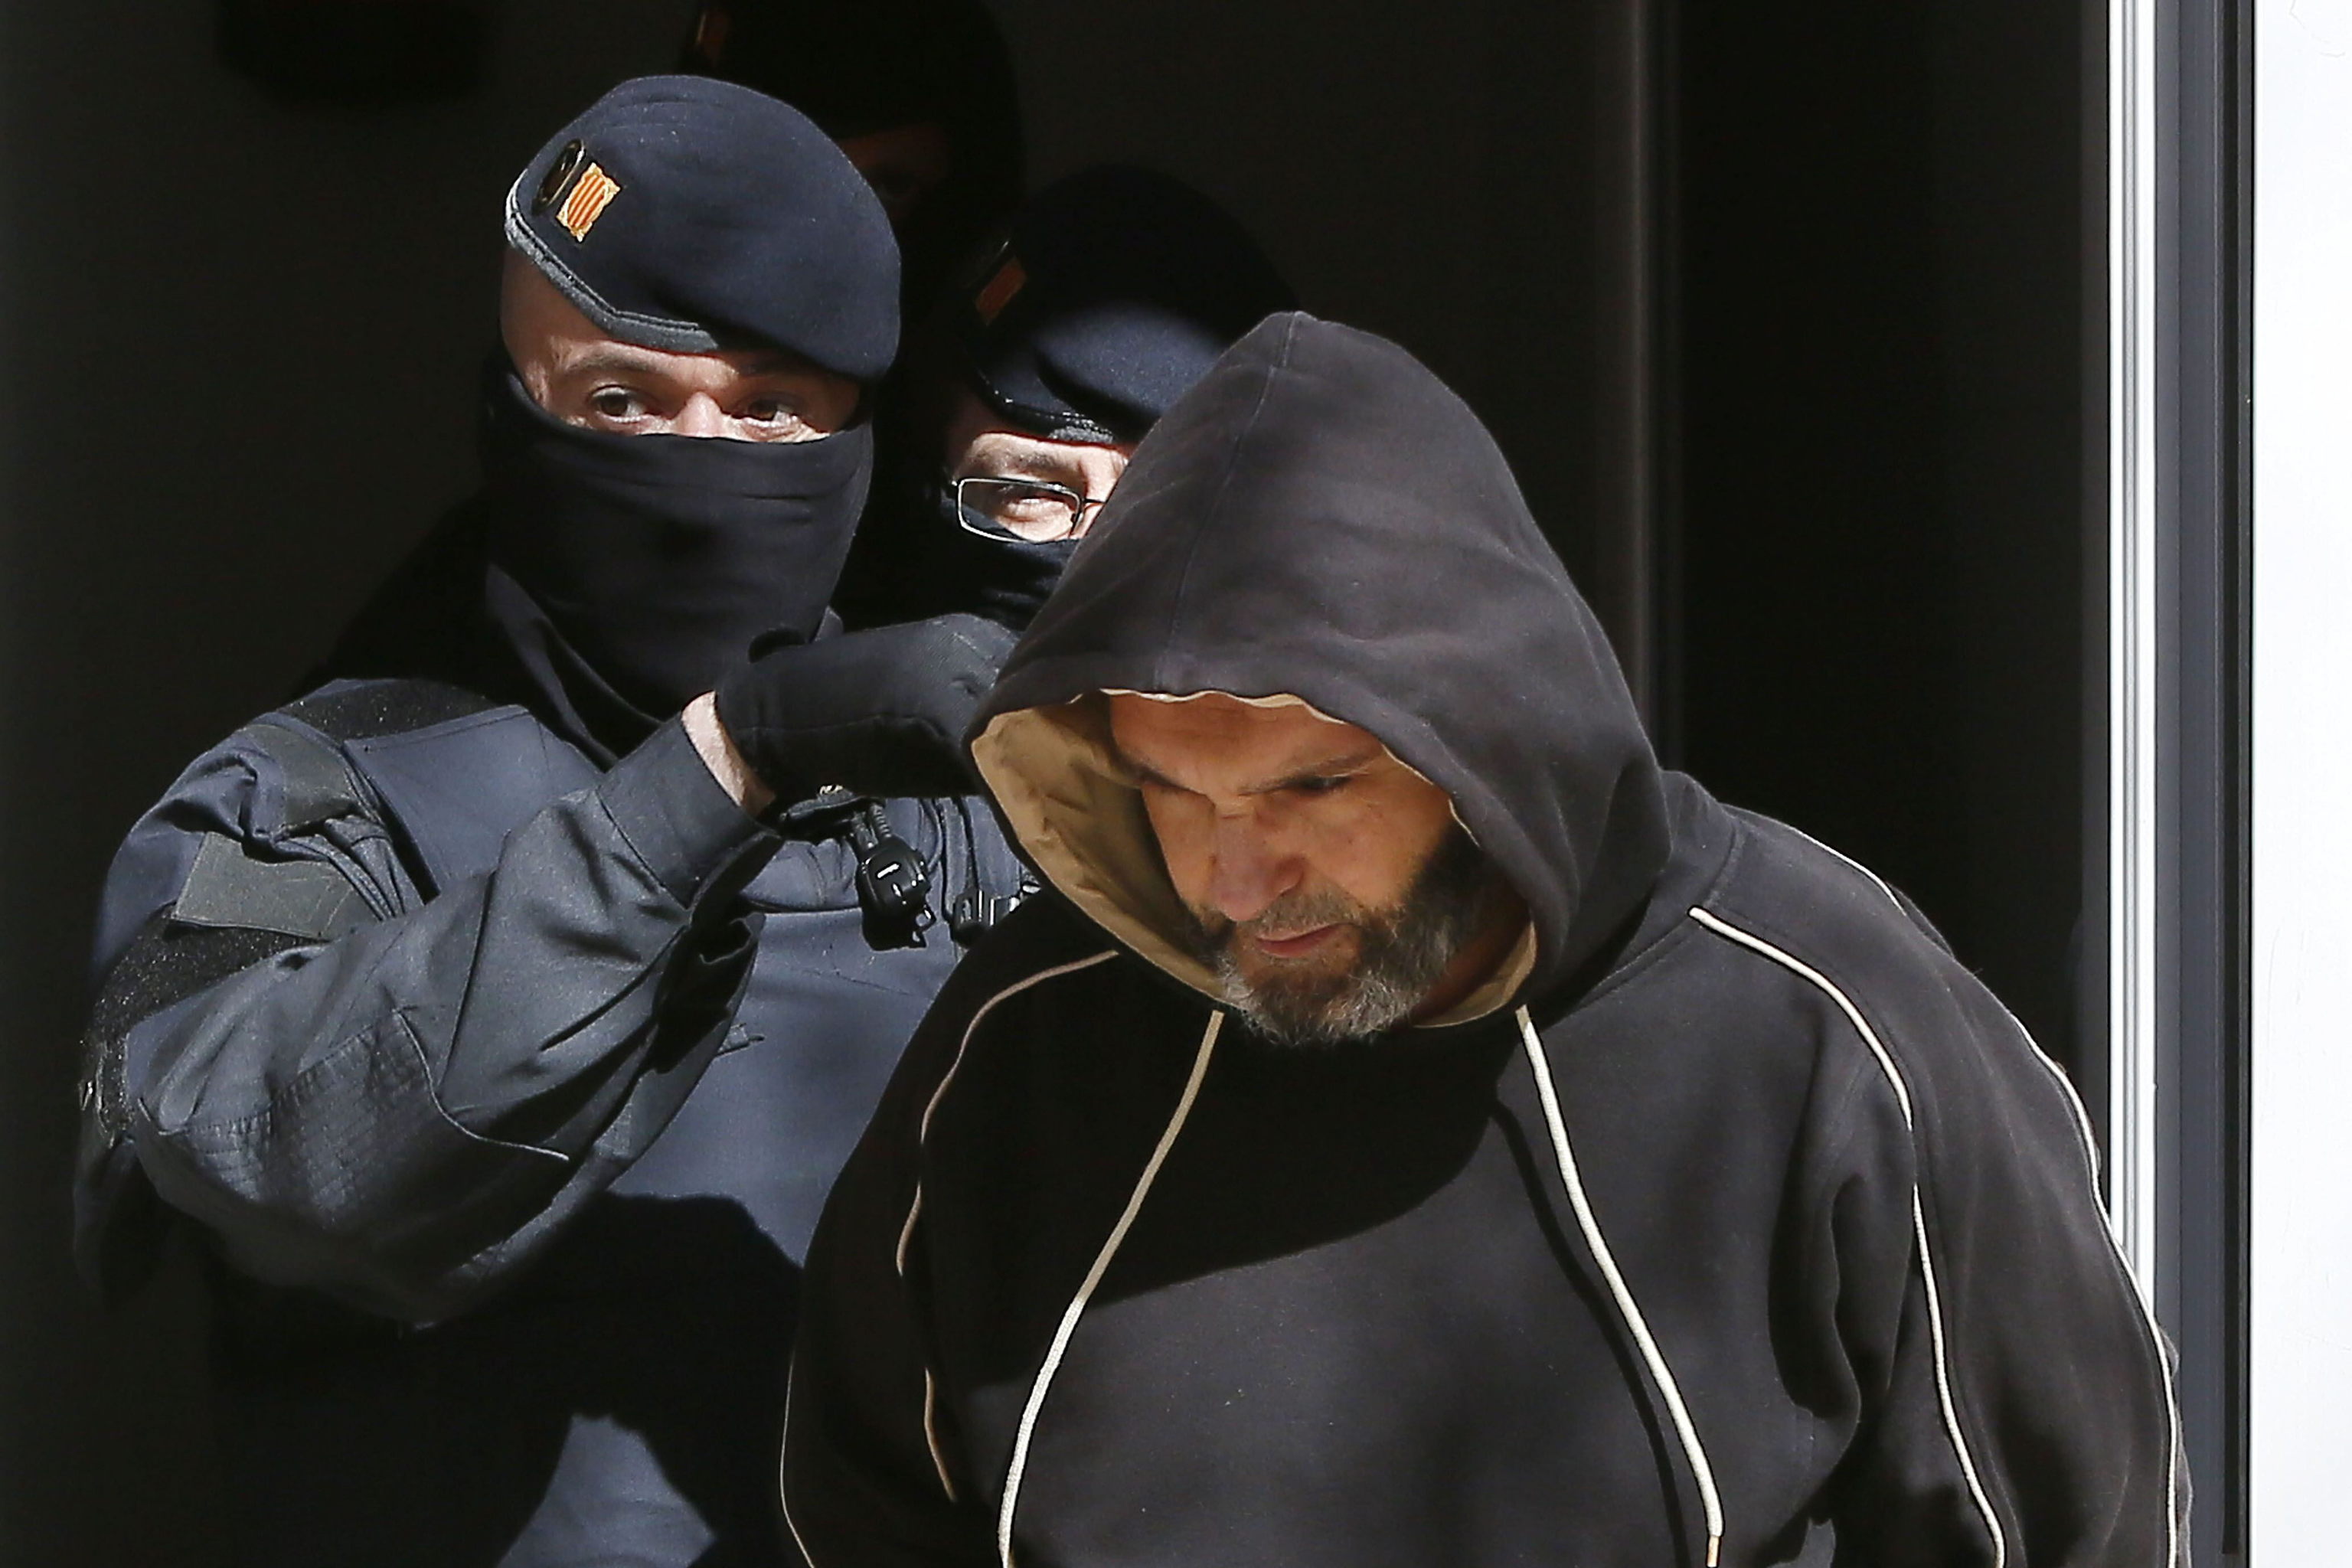 Un agente de los Mossos d'Esquadra custodia a un detenido por yihadismo